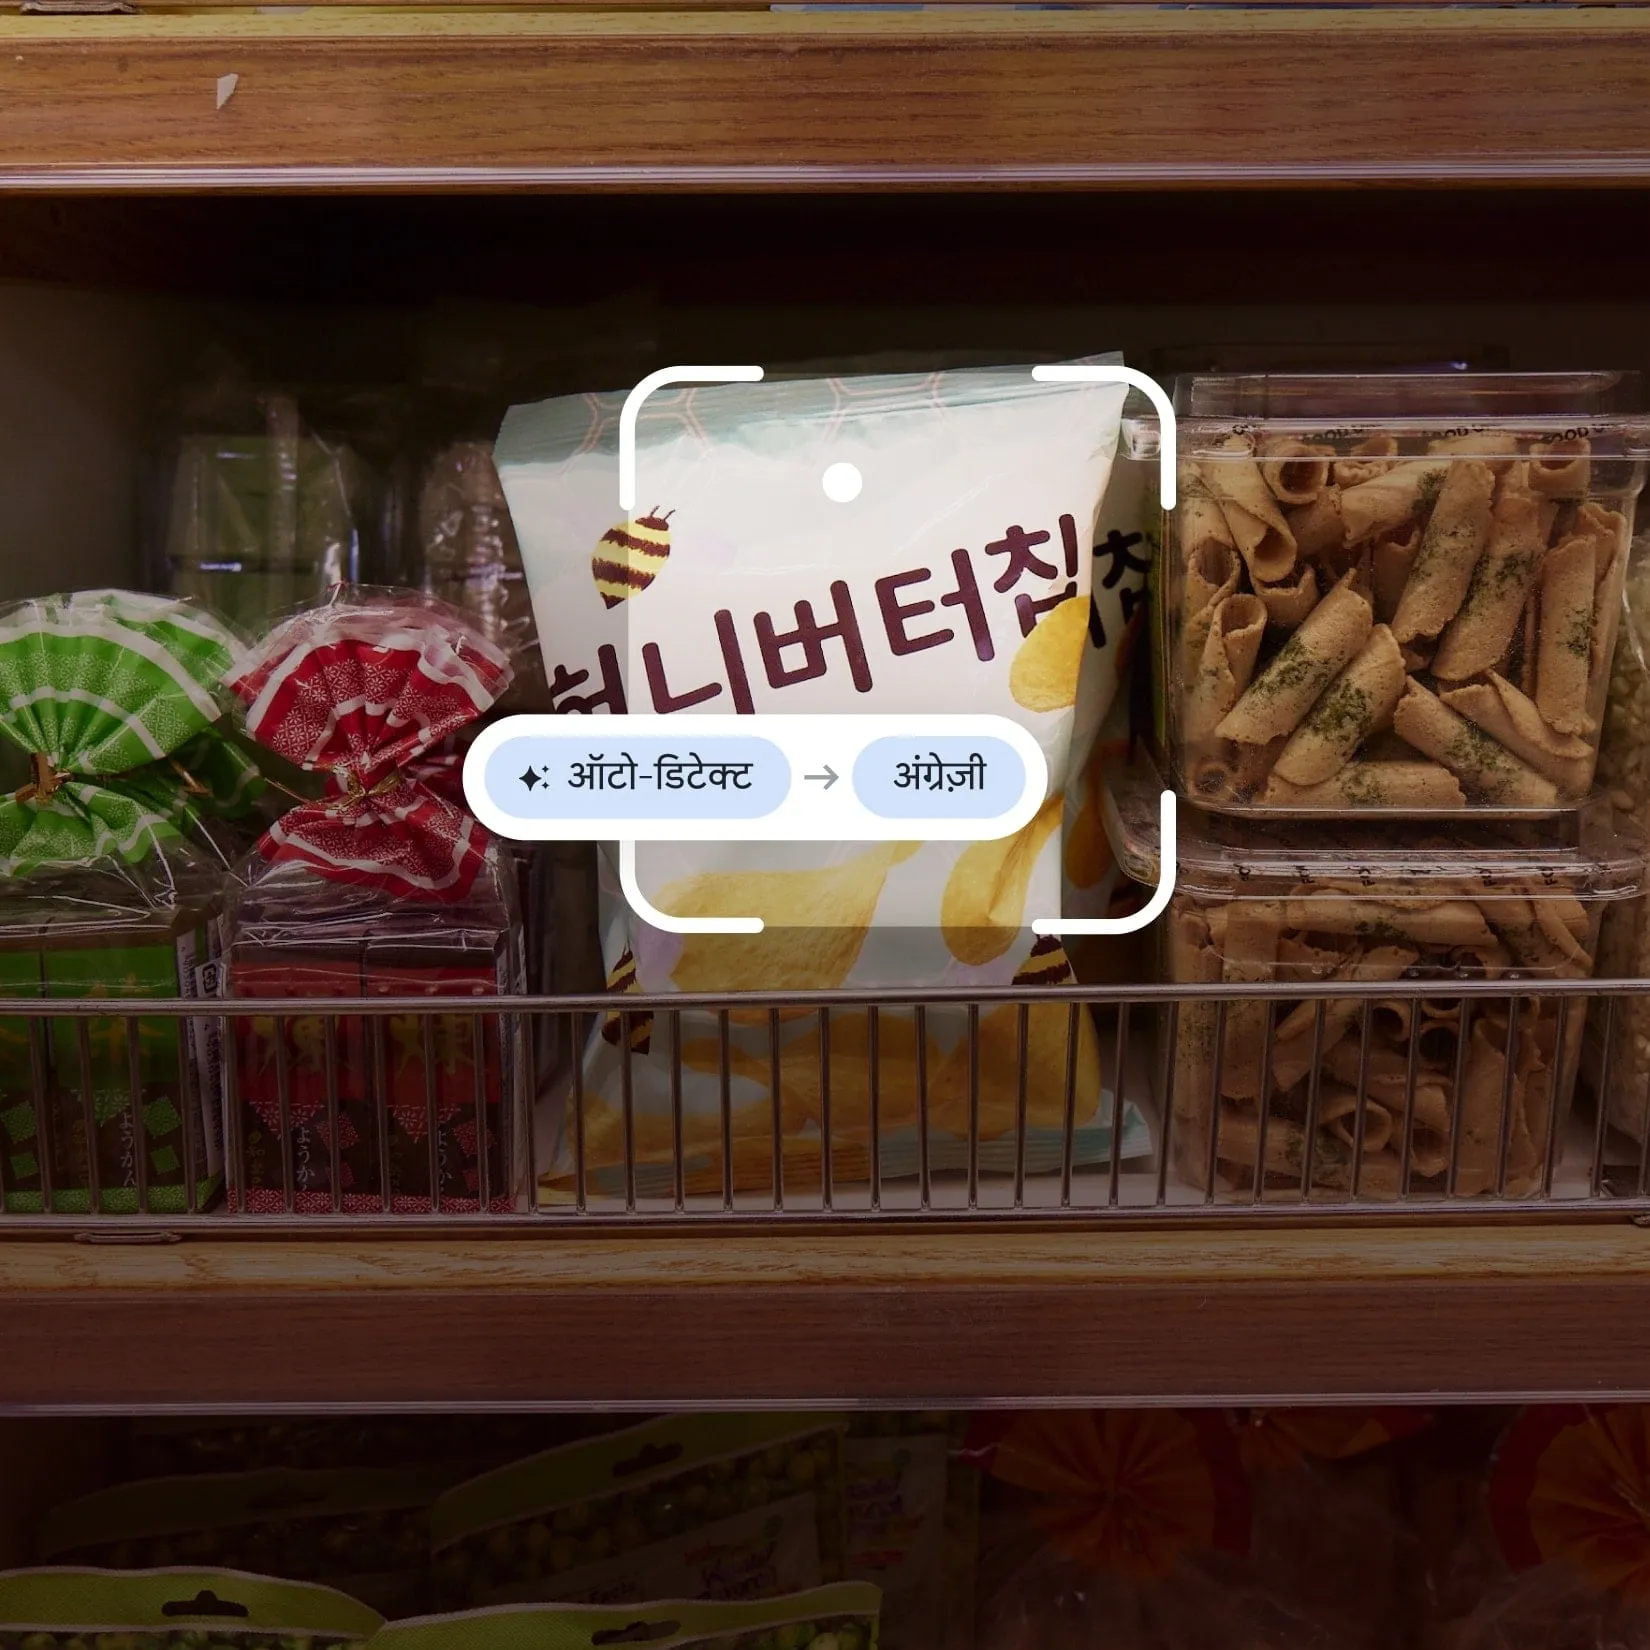 कोरियाई हनी बटर चिप्स पर इस्तेमाल किए जा रहे Google ट्रांसलेशन की तस्वीर